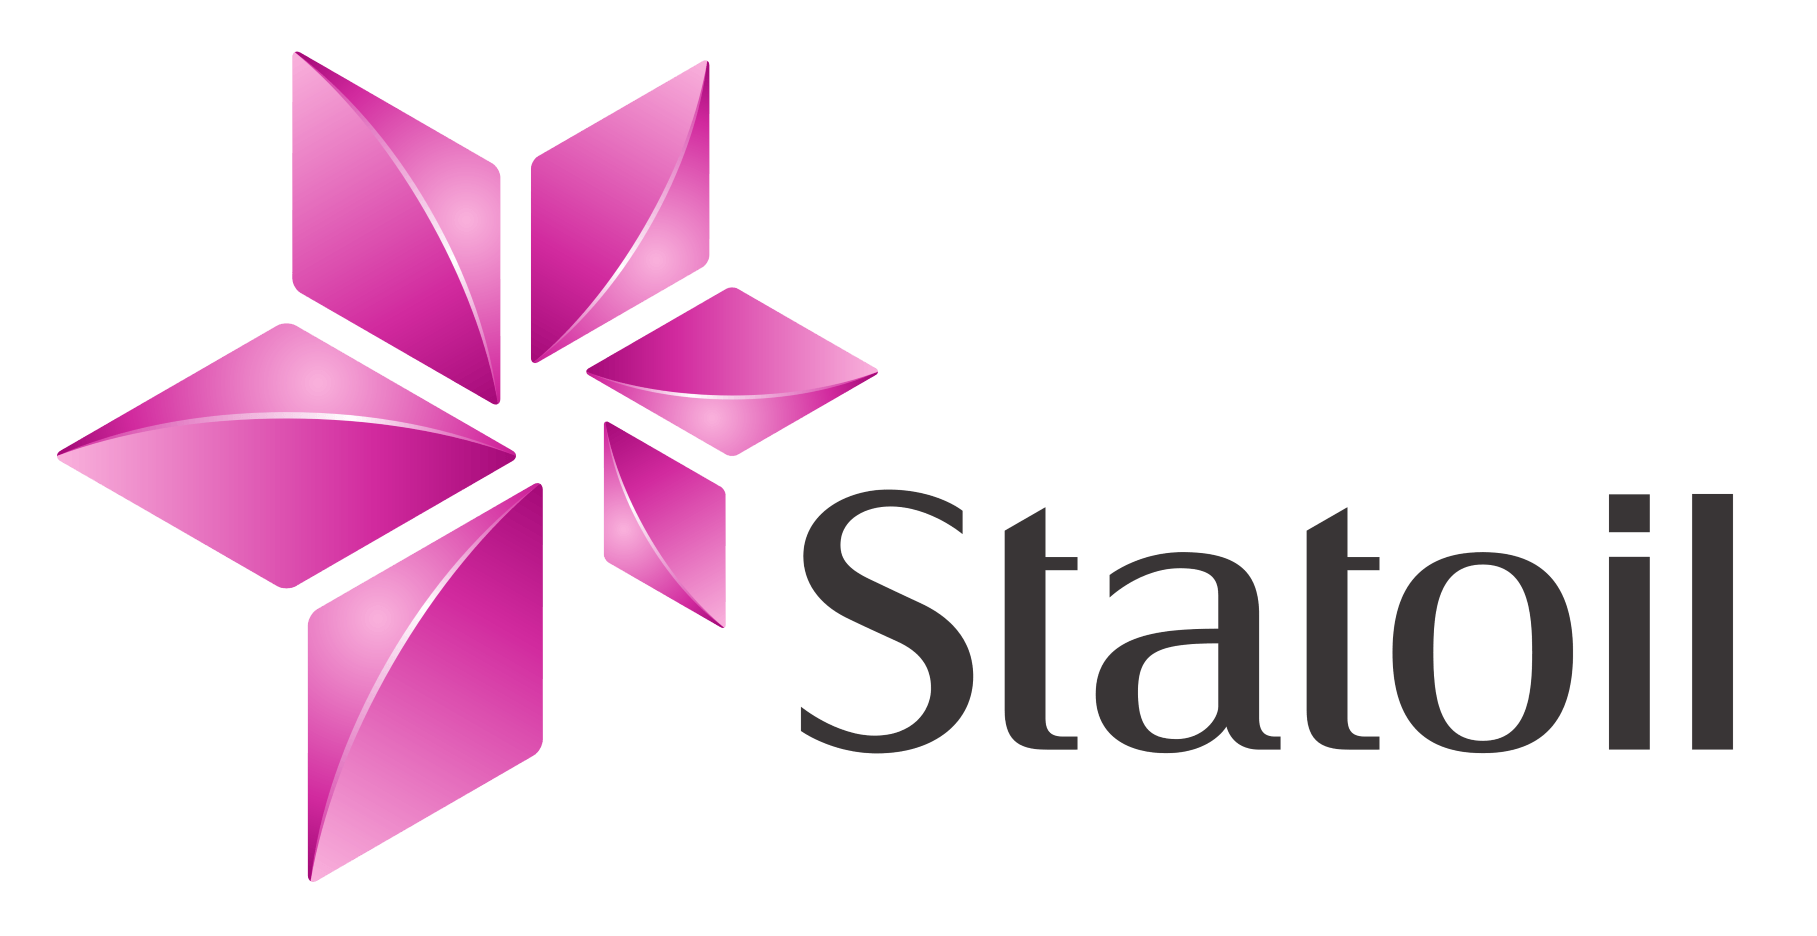 Statoil Logo - Statoil